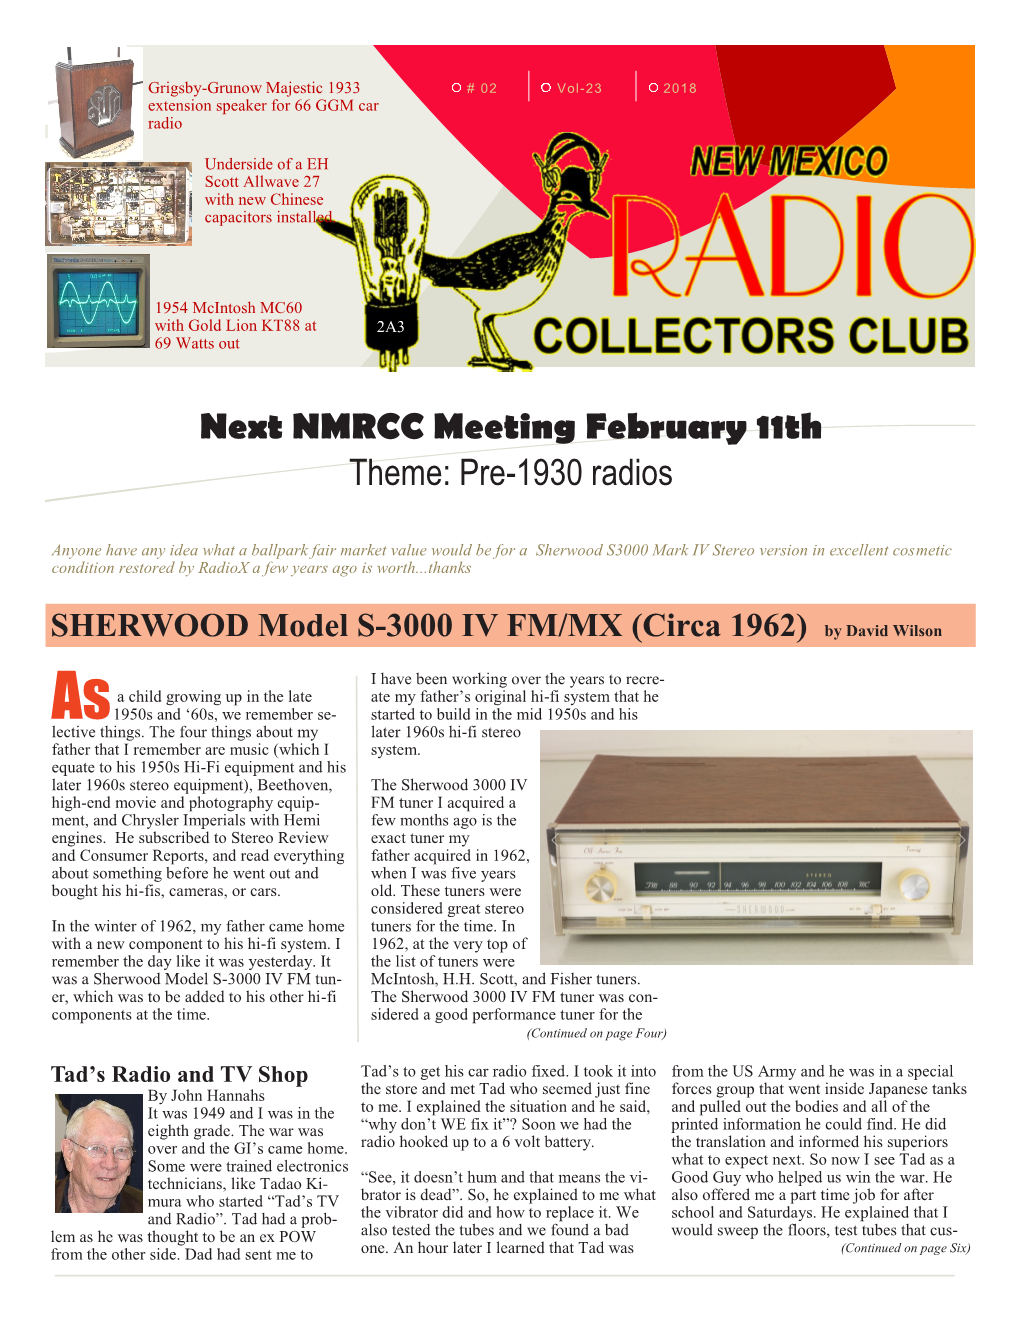 Next NMRCC Meeting February 11Th Theme: Pre-1930 Radios